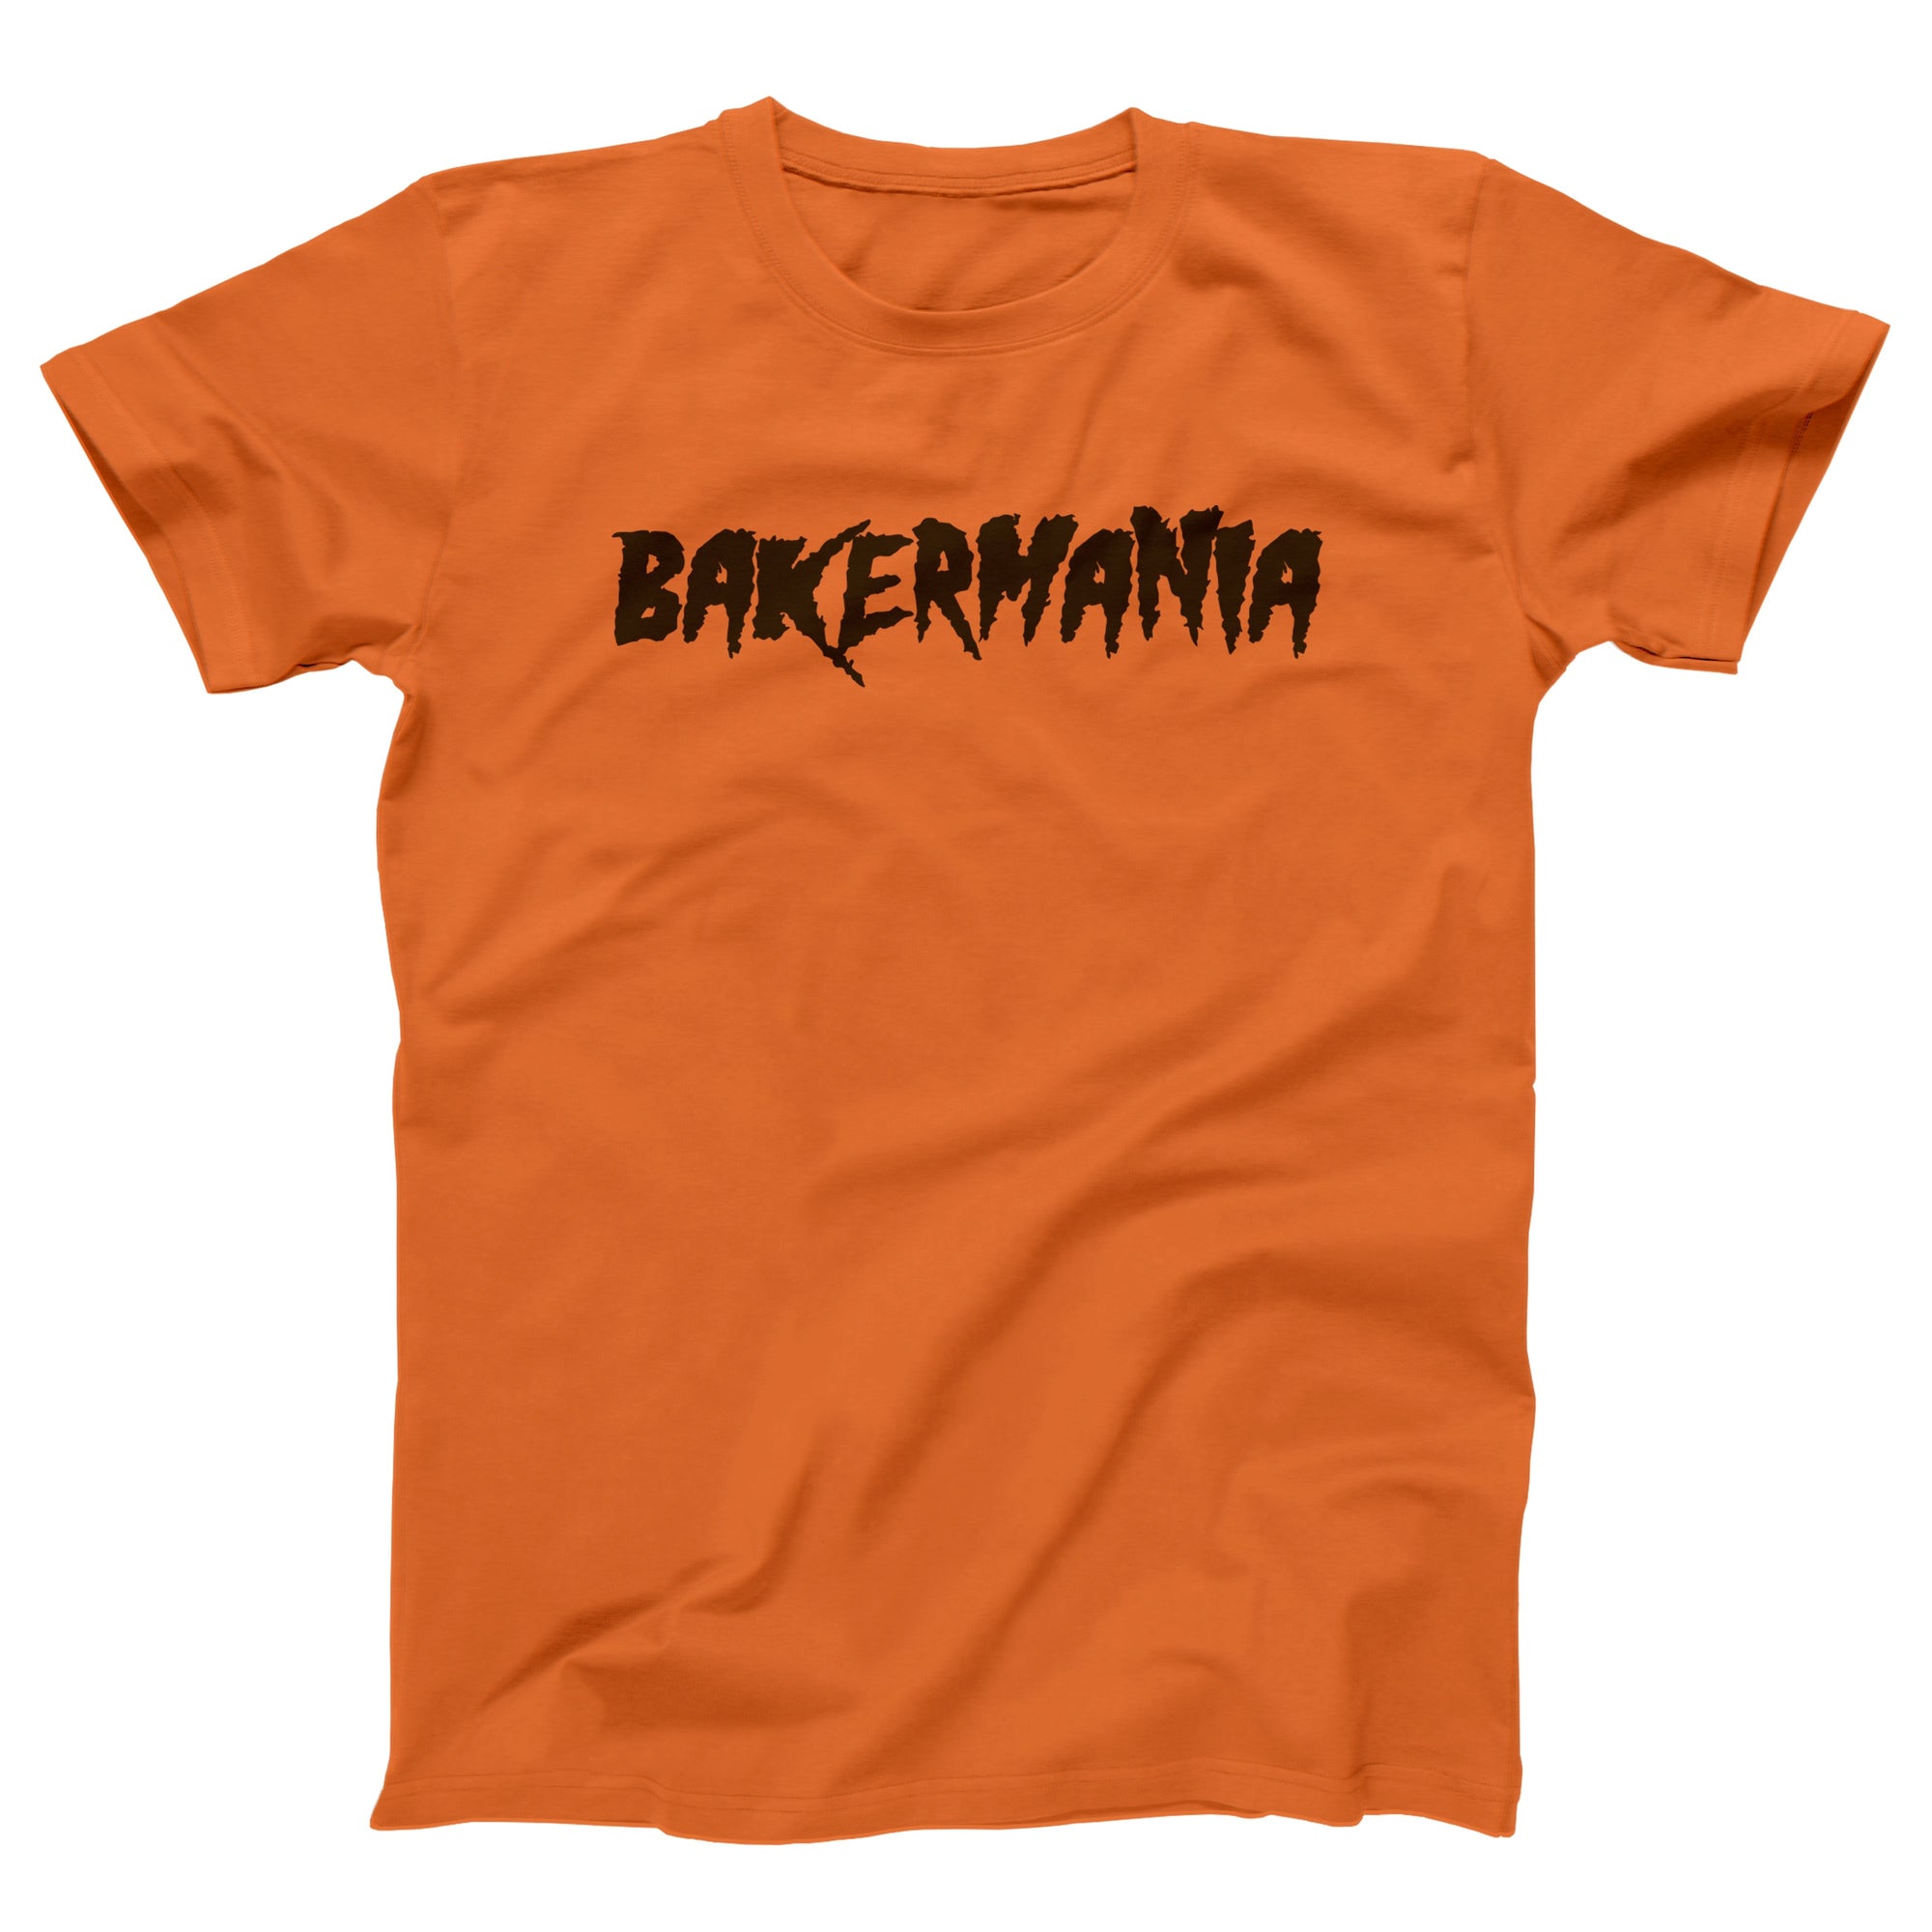 Bakermania Adult Unisex T-Shirt - Twisted Gorilla